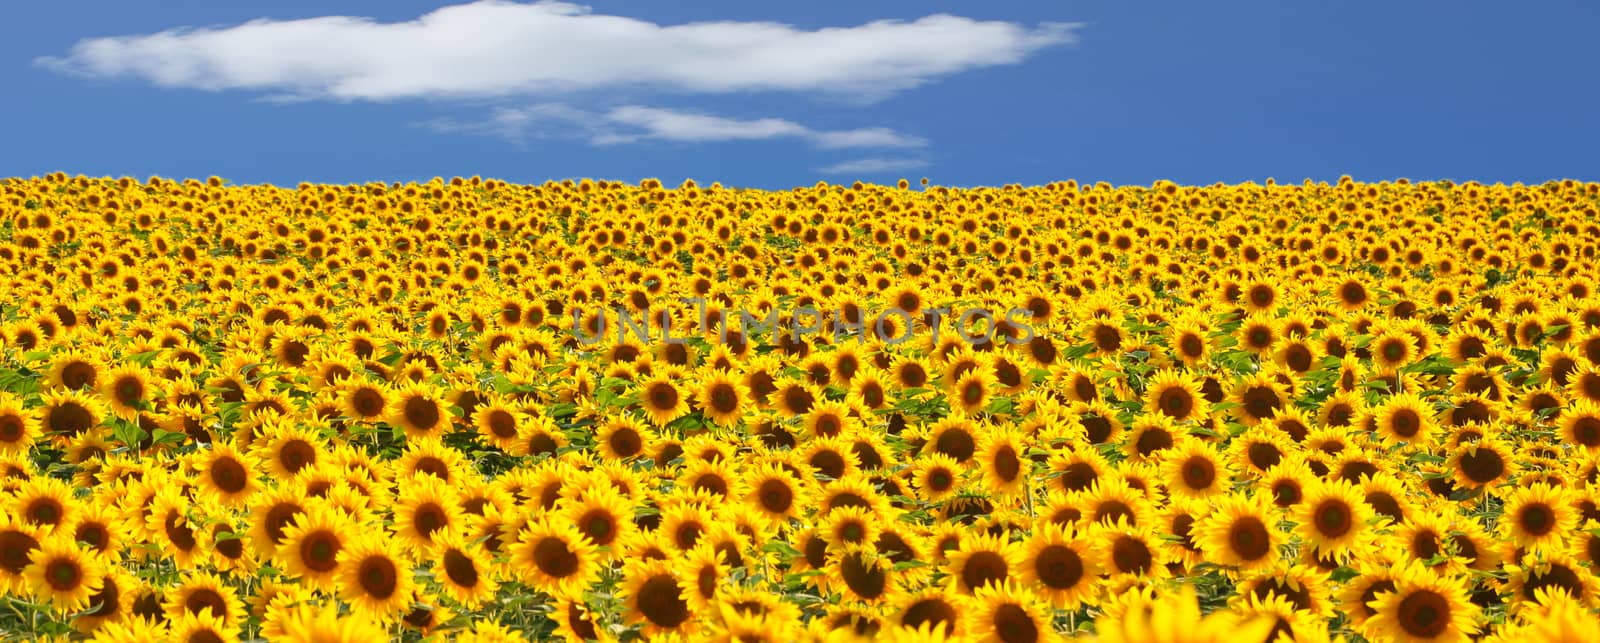 Field of sunflower by Nikola30